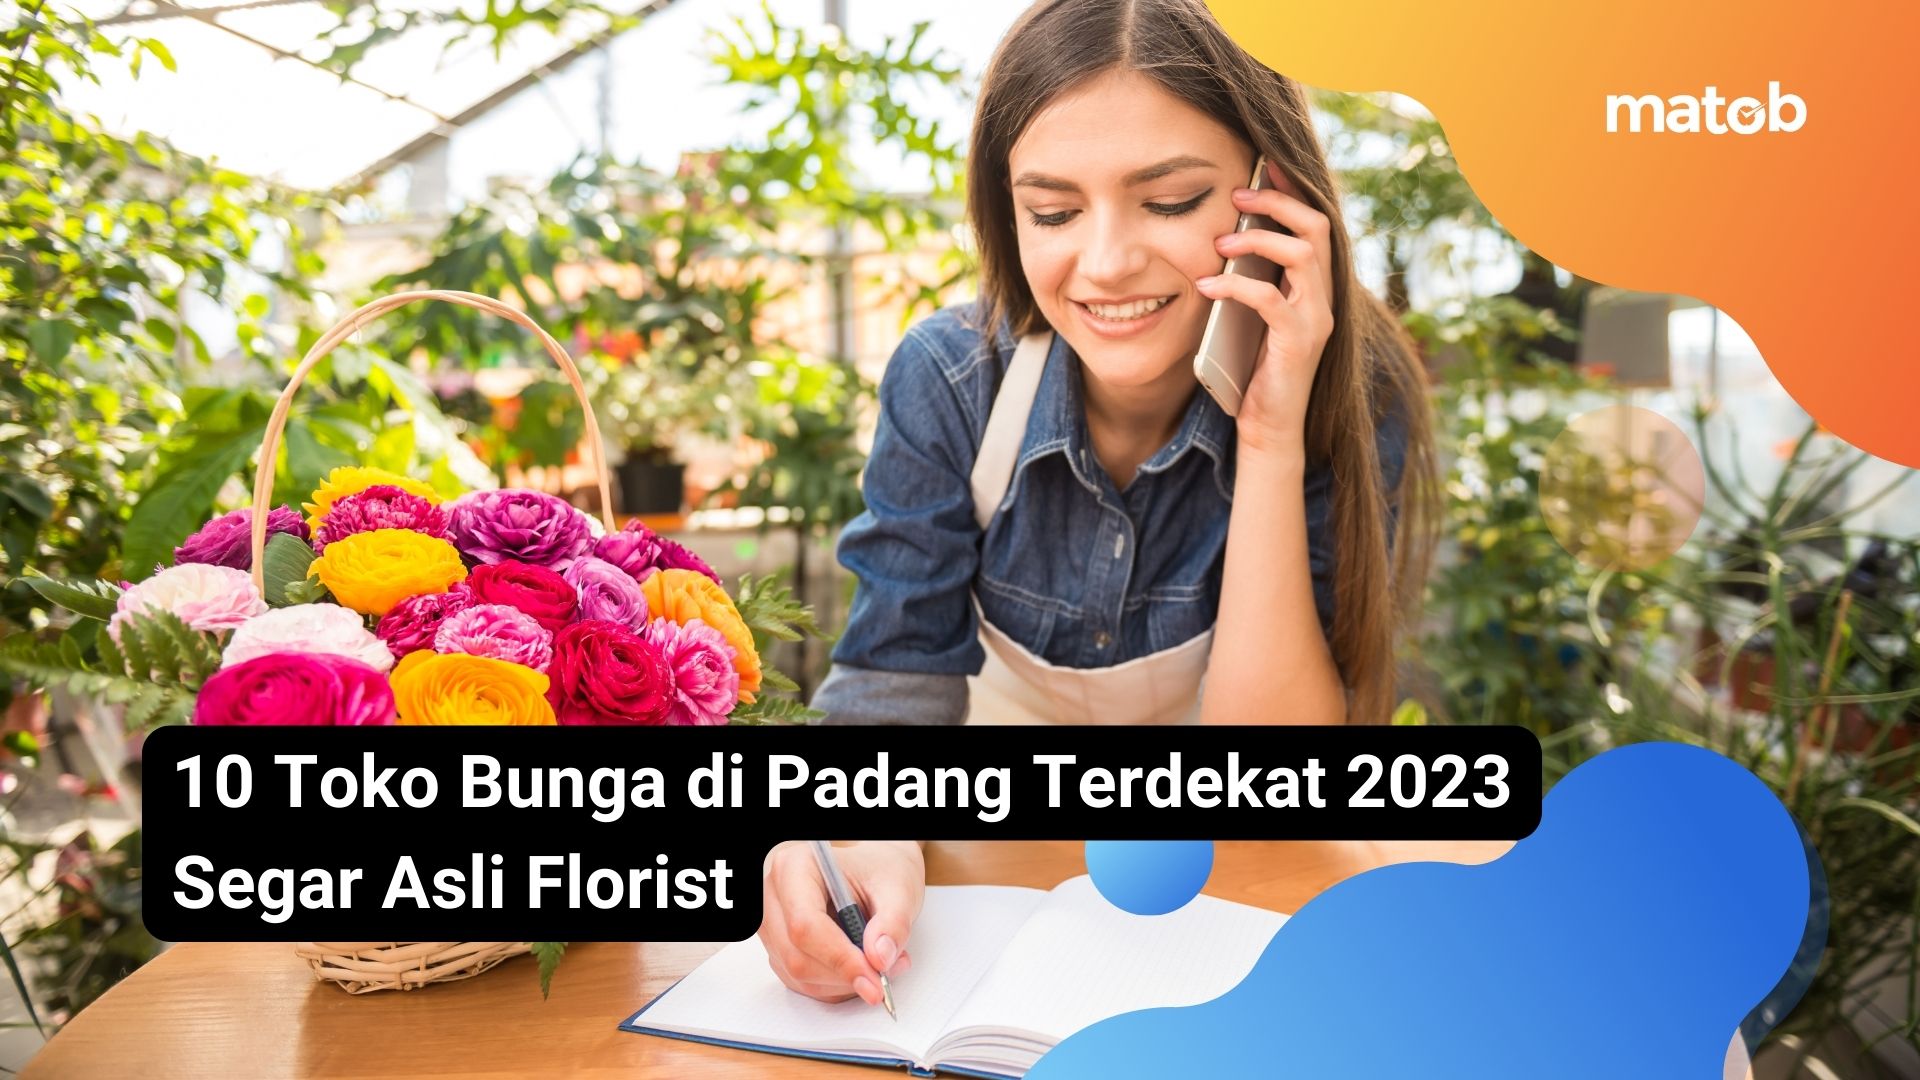 10 Toko Bunga di Padang Terdekat 2023 Segar Asli Florist